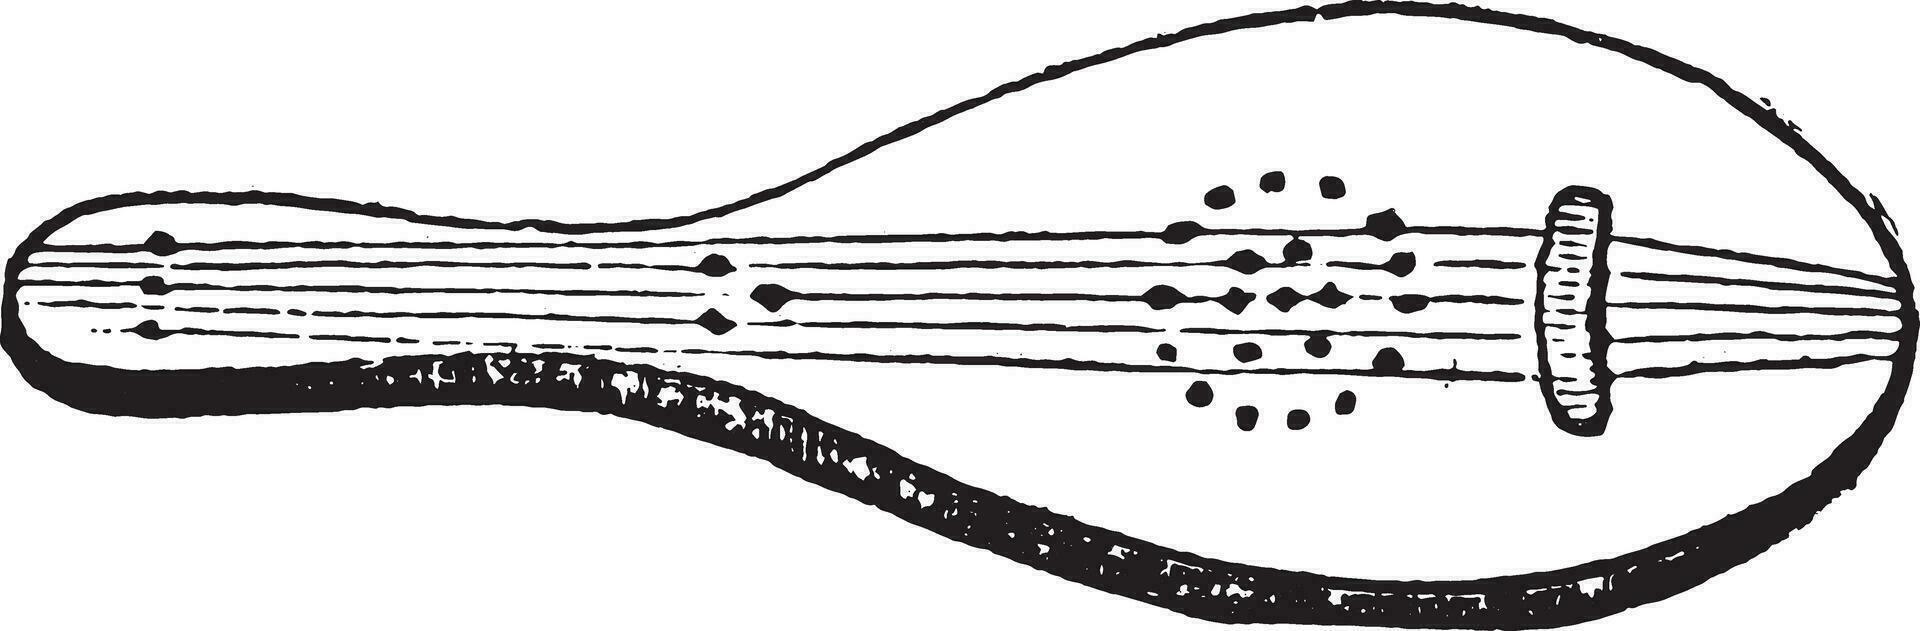 fünfsaitig Laute, dreizehnte Jahrhundert, Jahrgang Gravur. vektor